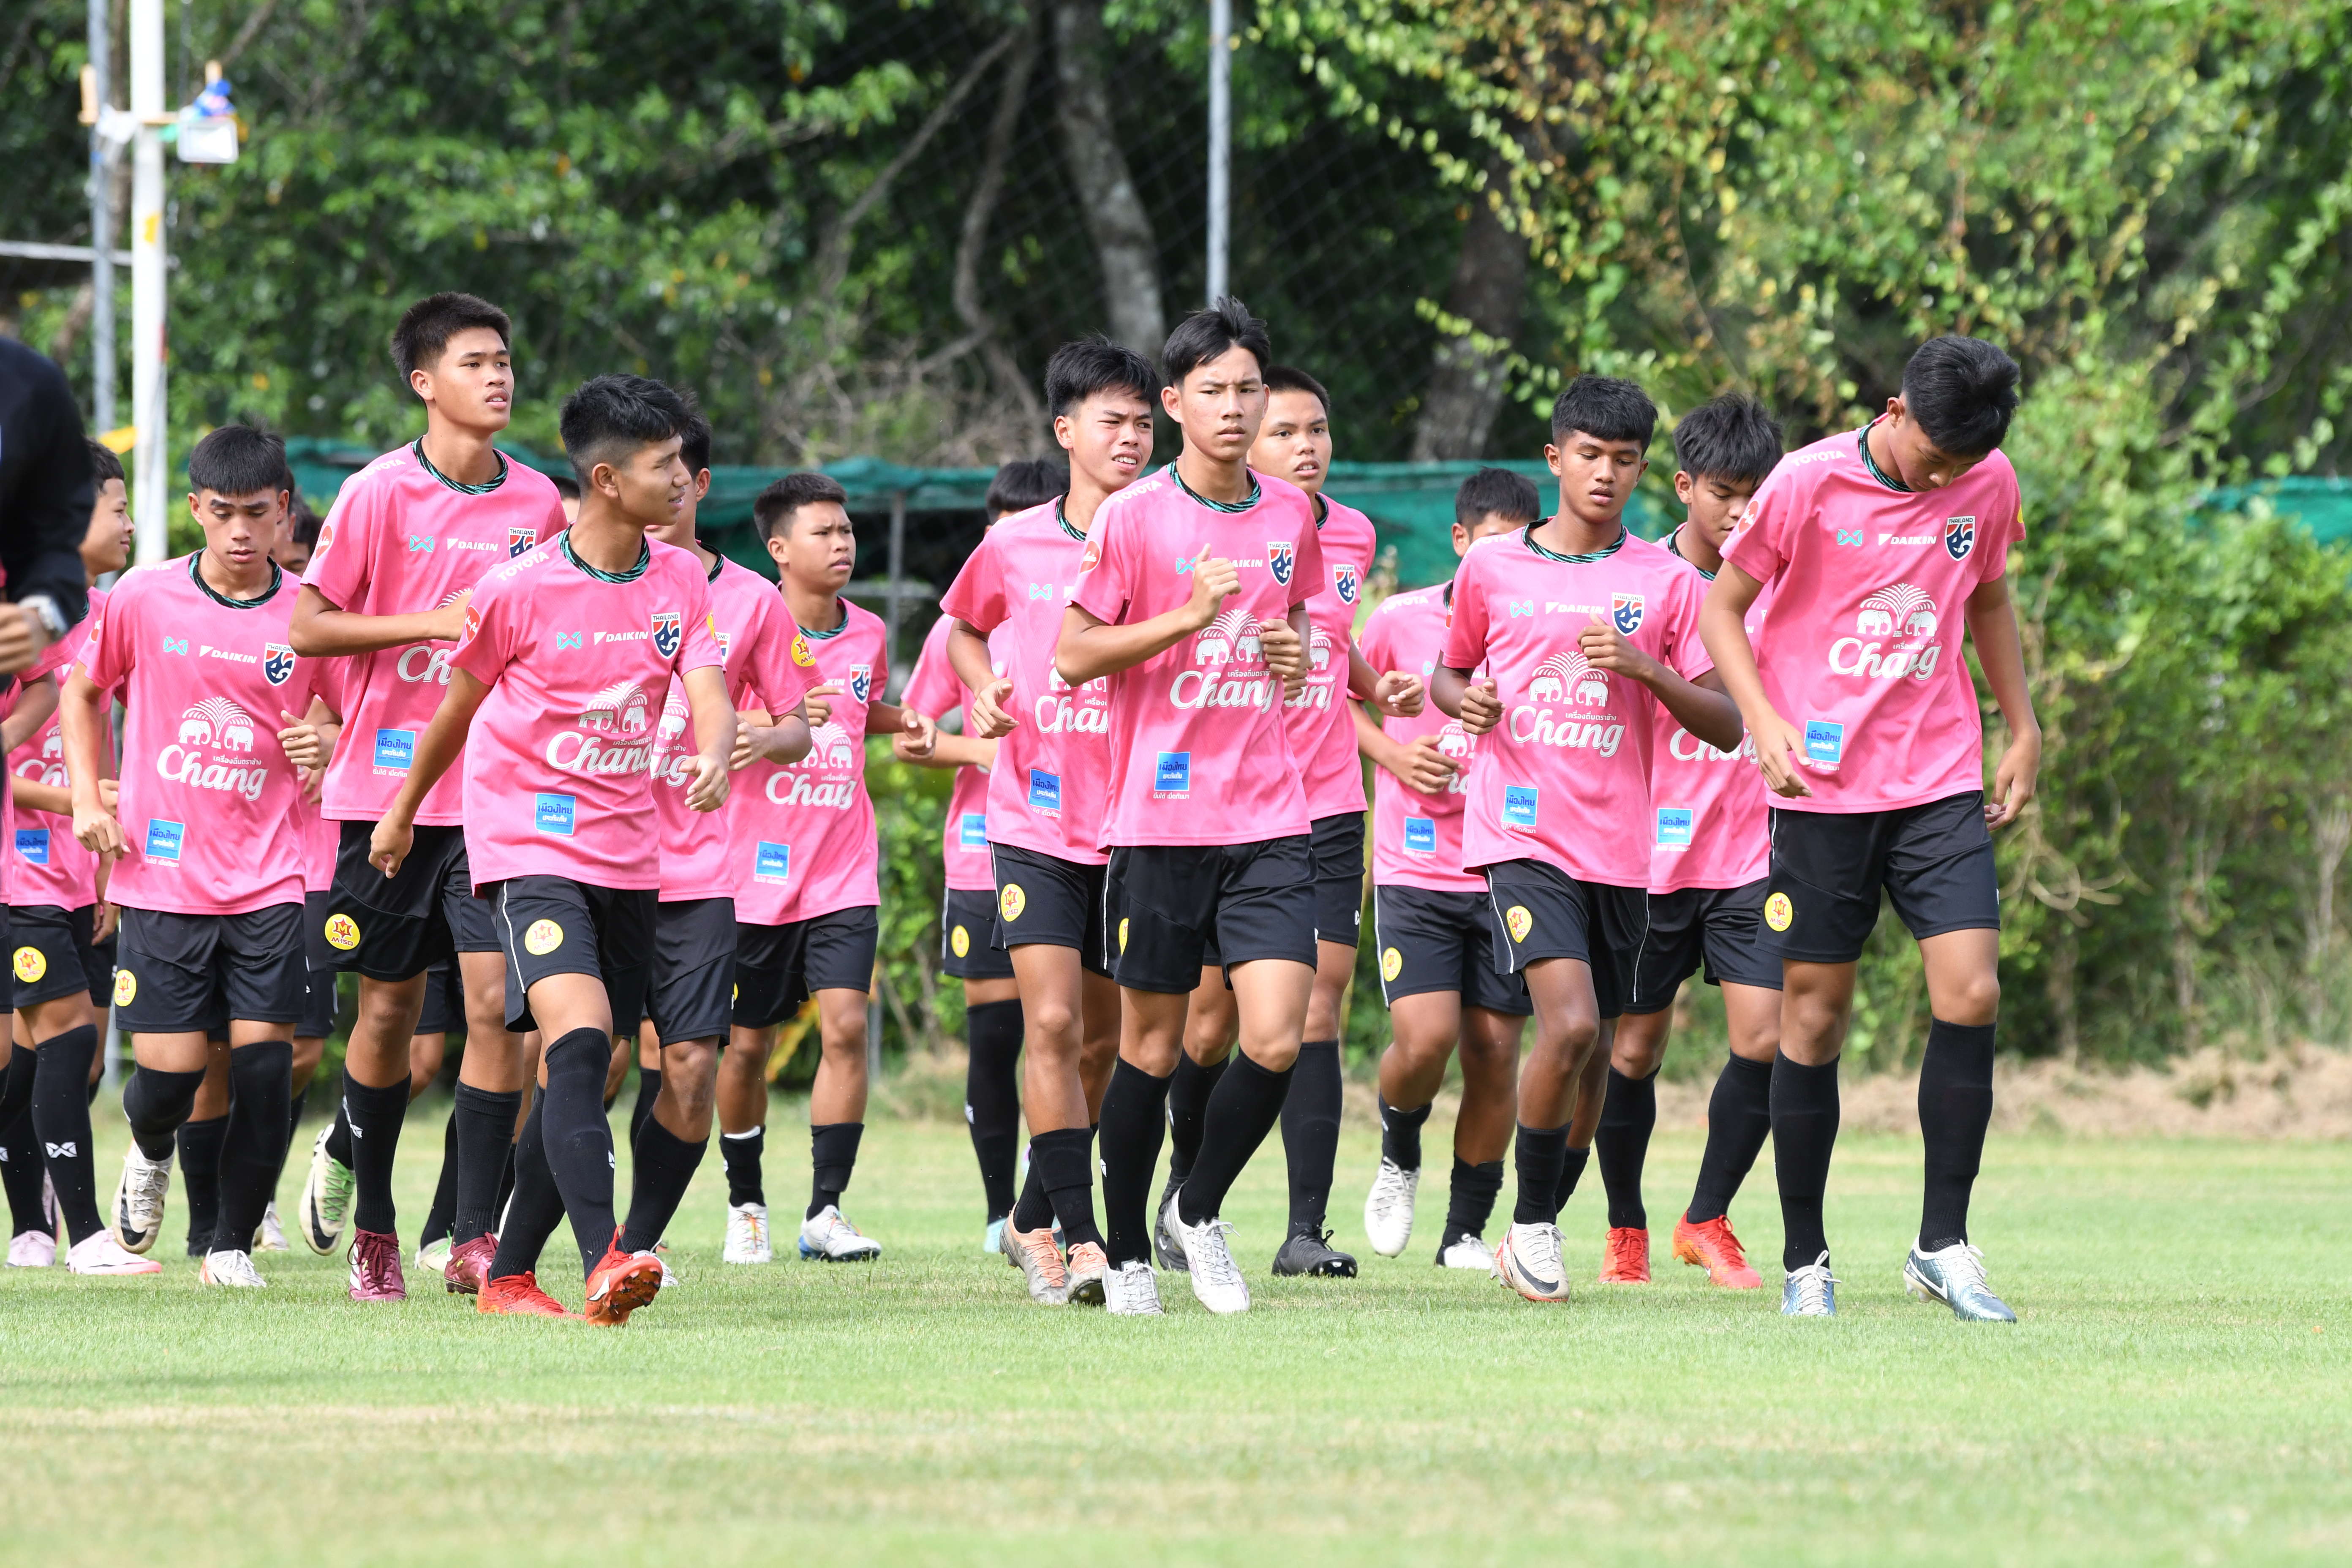 ทีมชาติไทย U17 ซ้อมครั้งสุดท้าย ก่อนอุ่นเครื่องกับ ชลบุรี เพื่อคัดนักเตะเหลือ 23 คน